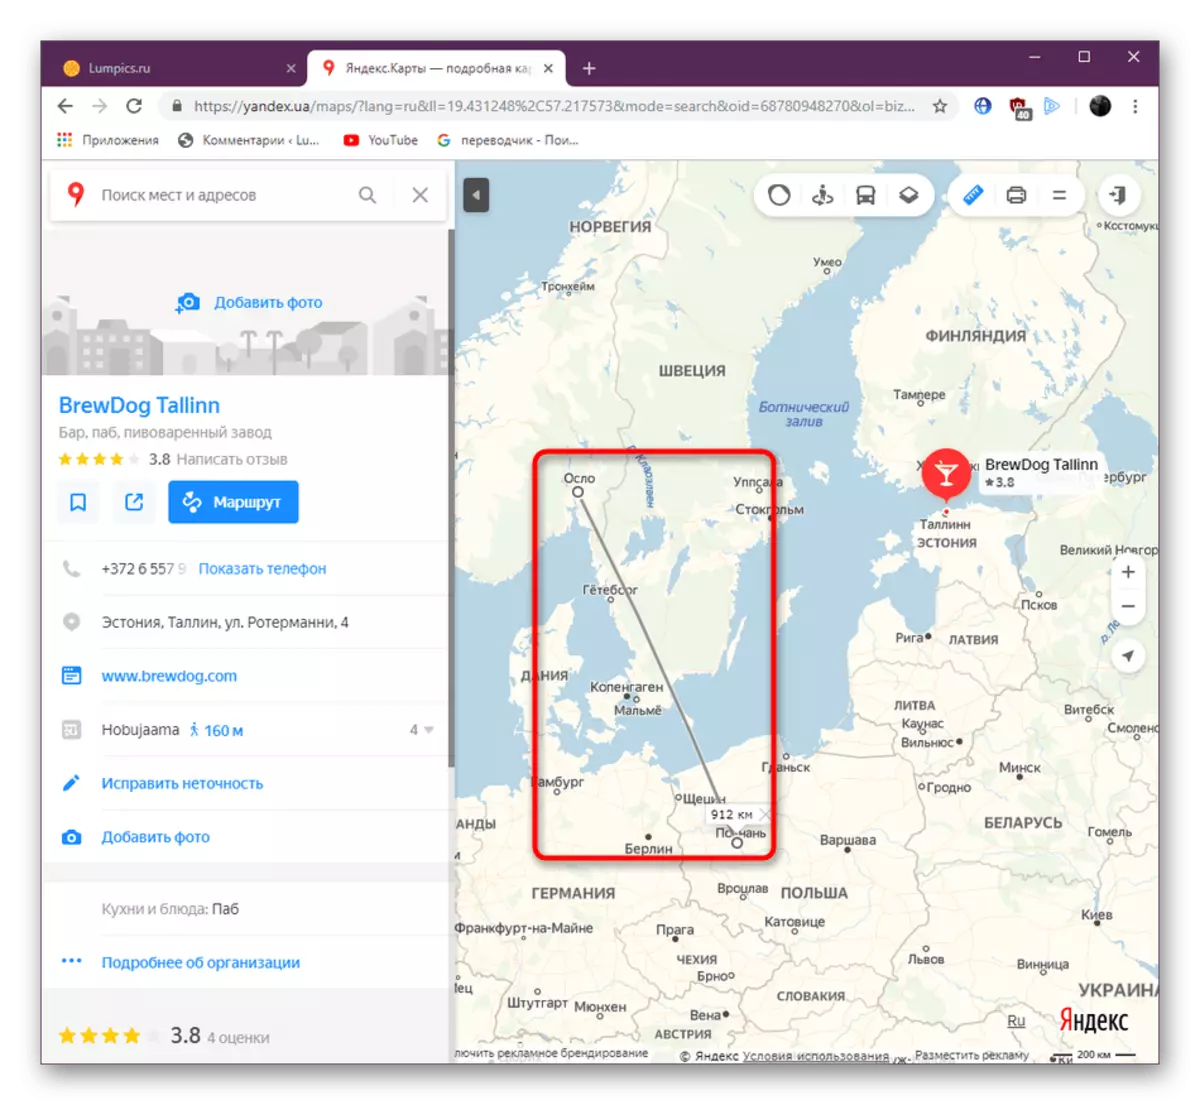 Андозагирии масофаи ҳама гуна миқёс бо истифодаи сатри Yandex.maps.maps